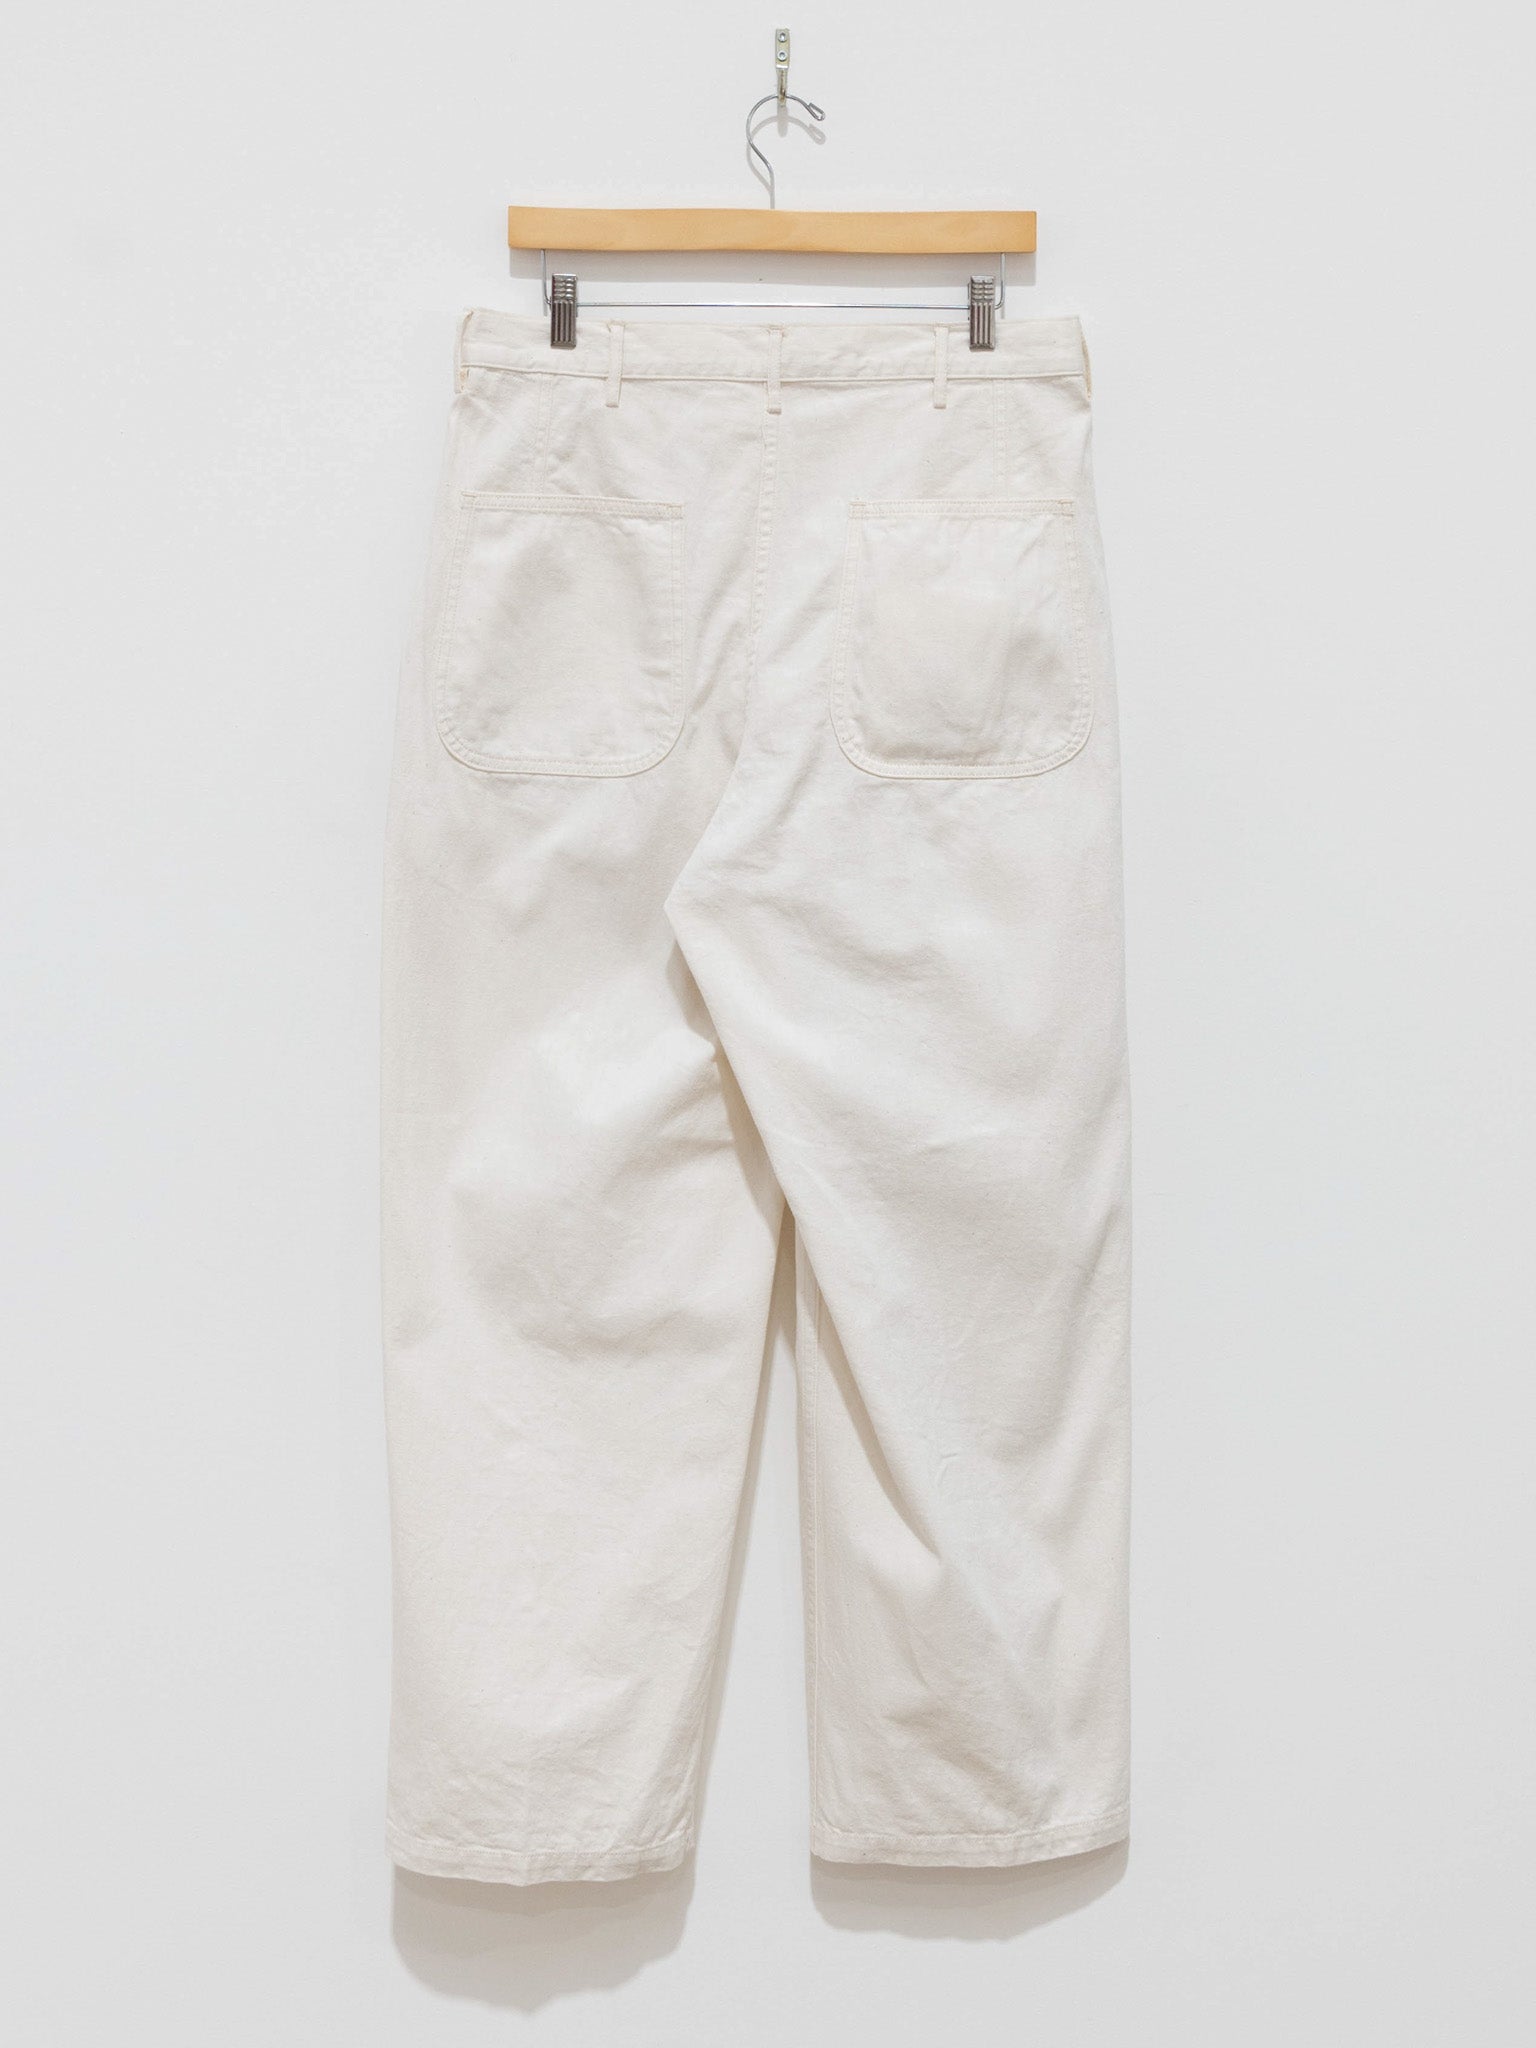 Namu Shop - Kaptain Sunshine Baker Denim Pants - White